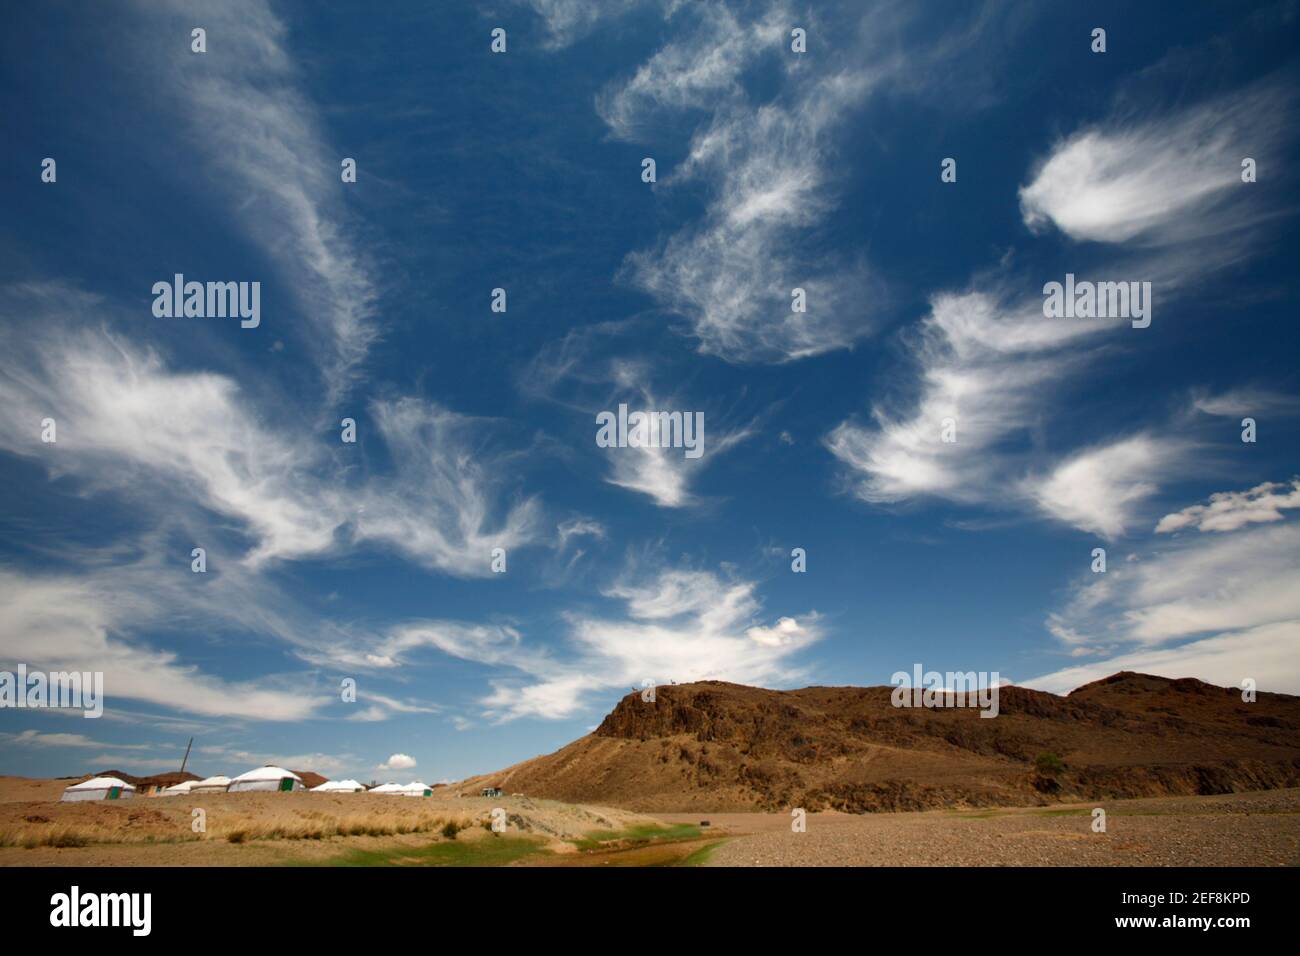 Traditionelle Gers eine touristische camp, Wüste Gobi, Mongolei Stockfoto